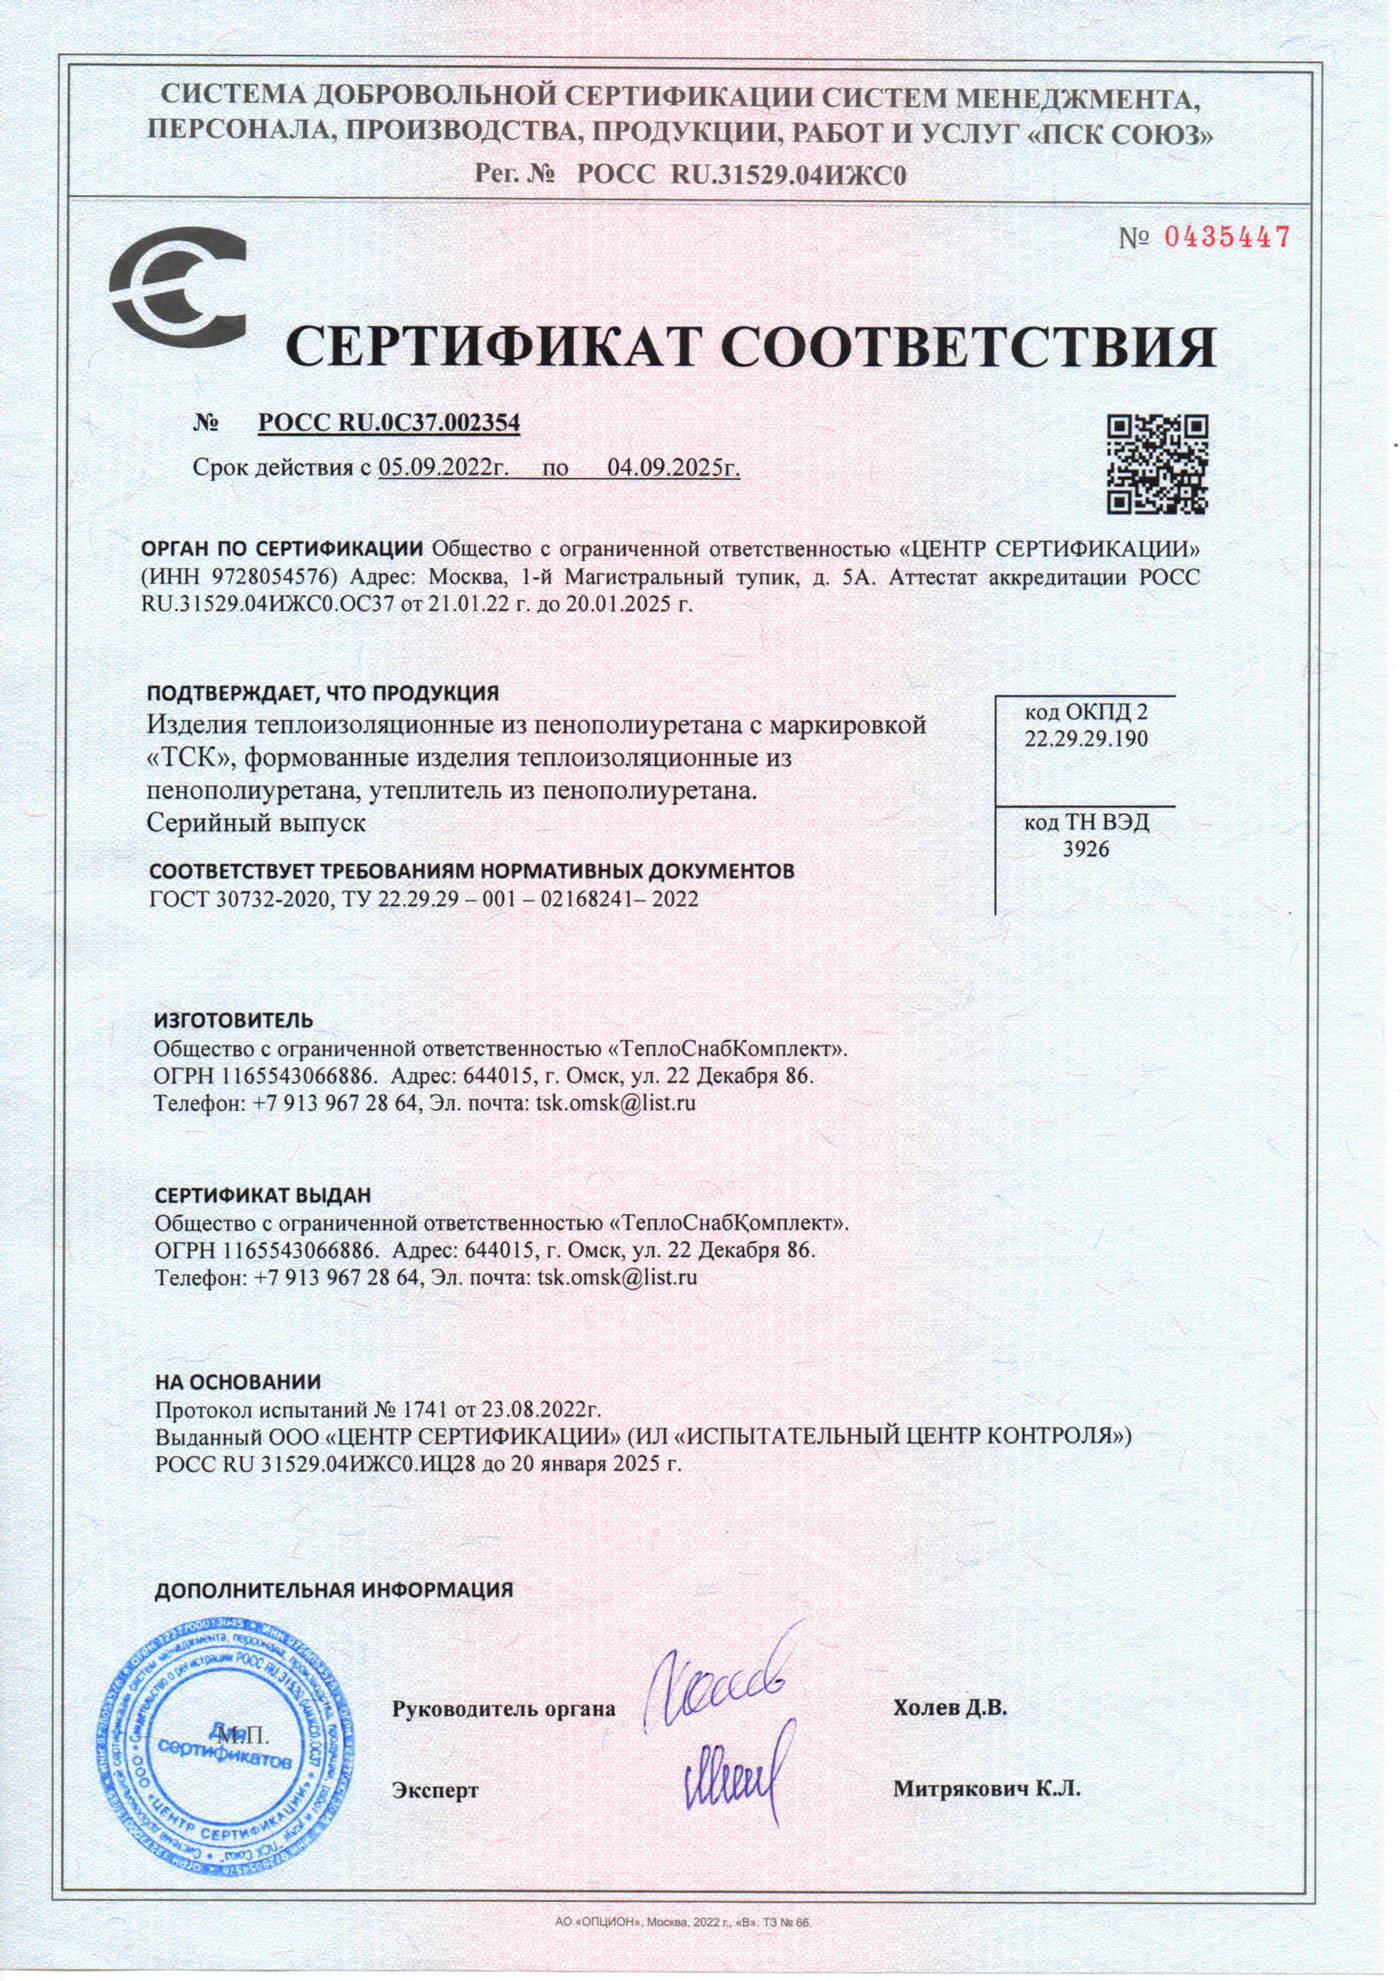 Сертификат соответствия ООО ТСК